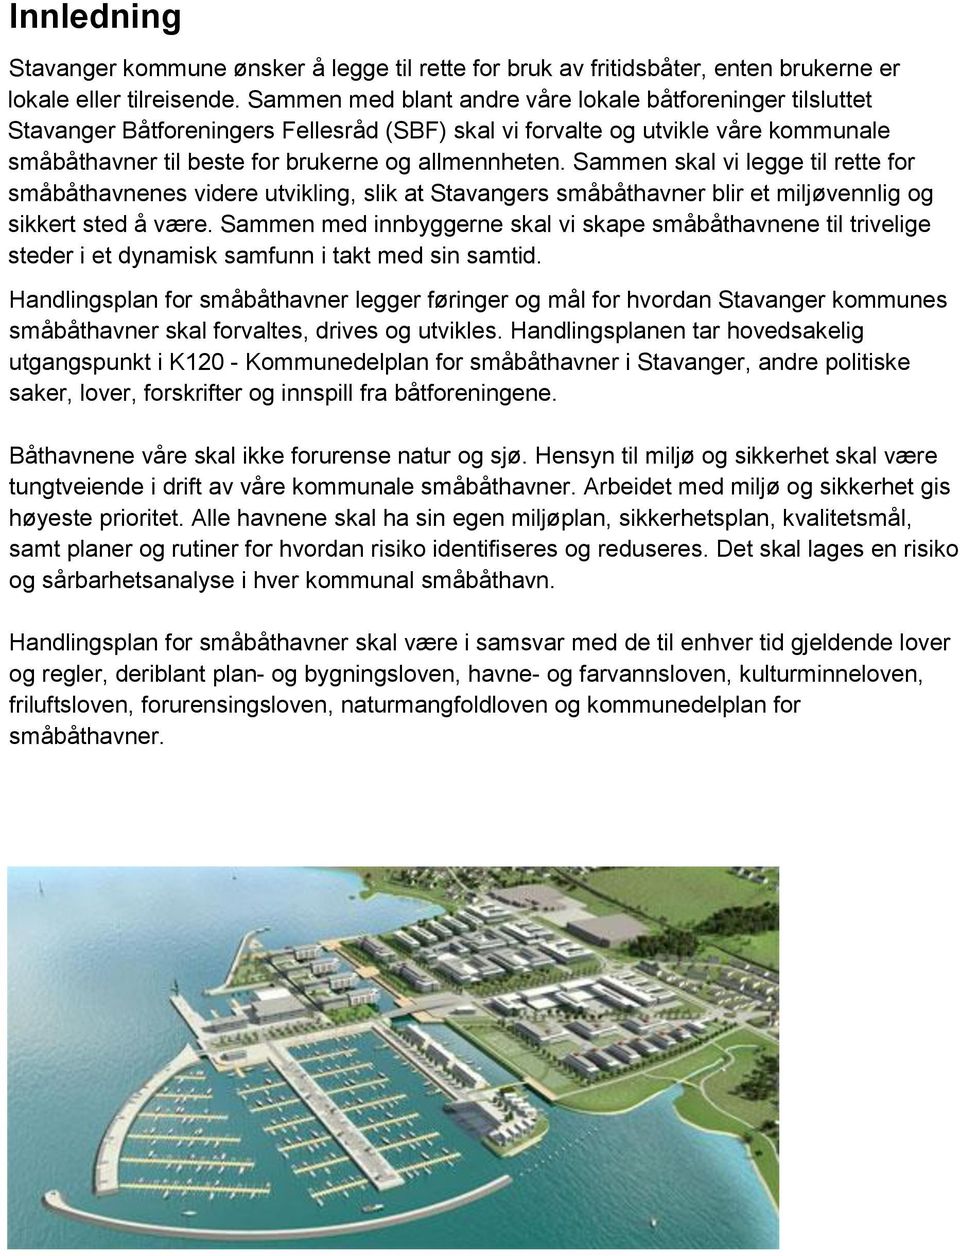 Sammen skal vi legge til rette for småbåthavnenes videre utvikling, slik at Stavangers småbåthavner blir et miljøvennlig og sikkert sted å være.